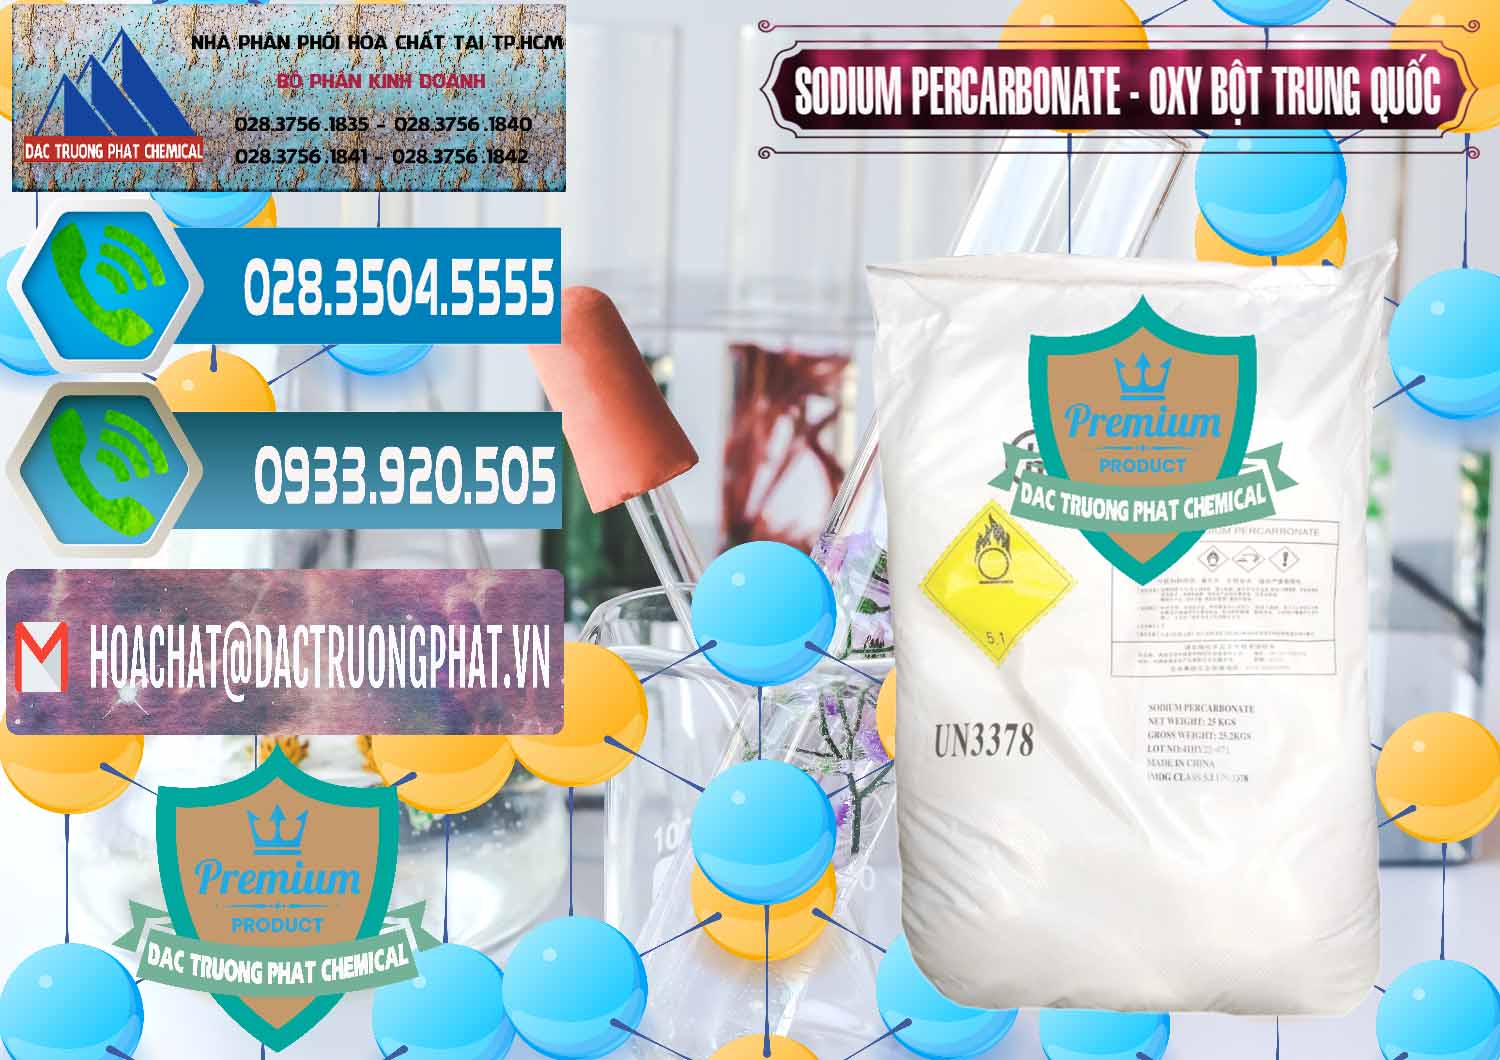 Công ty chuyên cung ứng ( bán ) Sodium Percarbonate Dạng Bột Trung Quốc China - 0390 - Nơi chuyên cung cấp - kinh doanh hóa chất tại TP.HCM - congtyhoachat.net